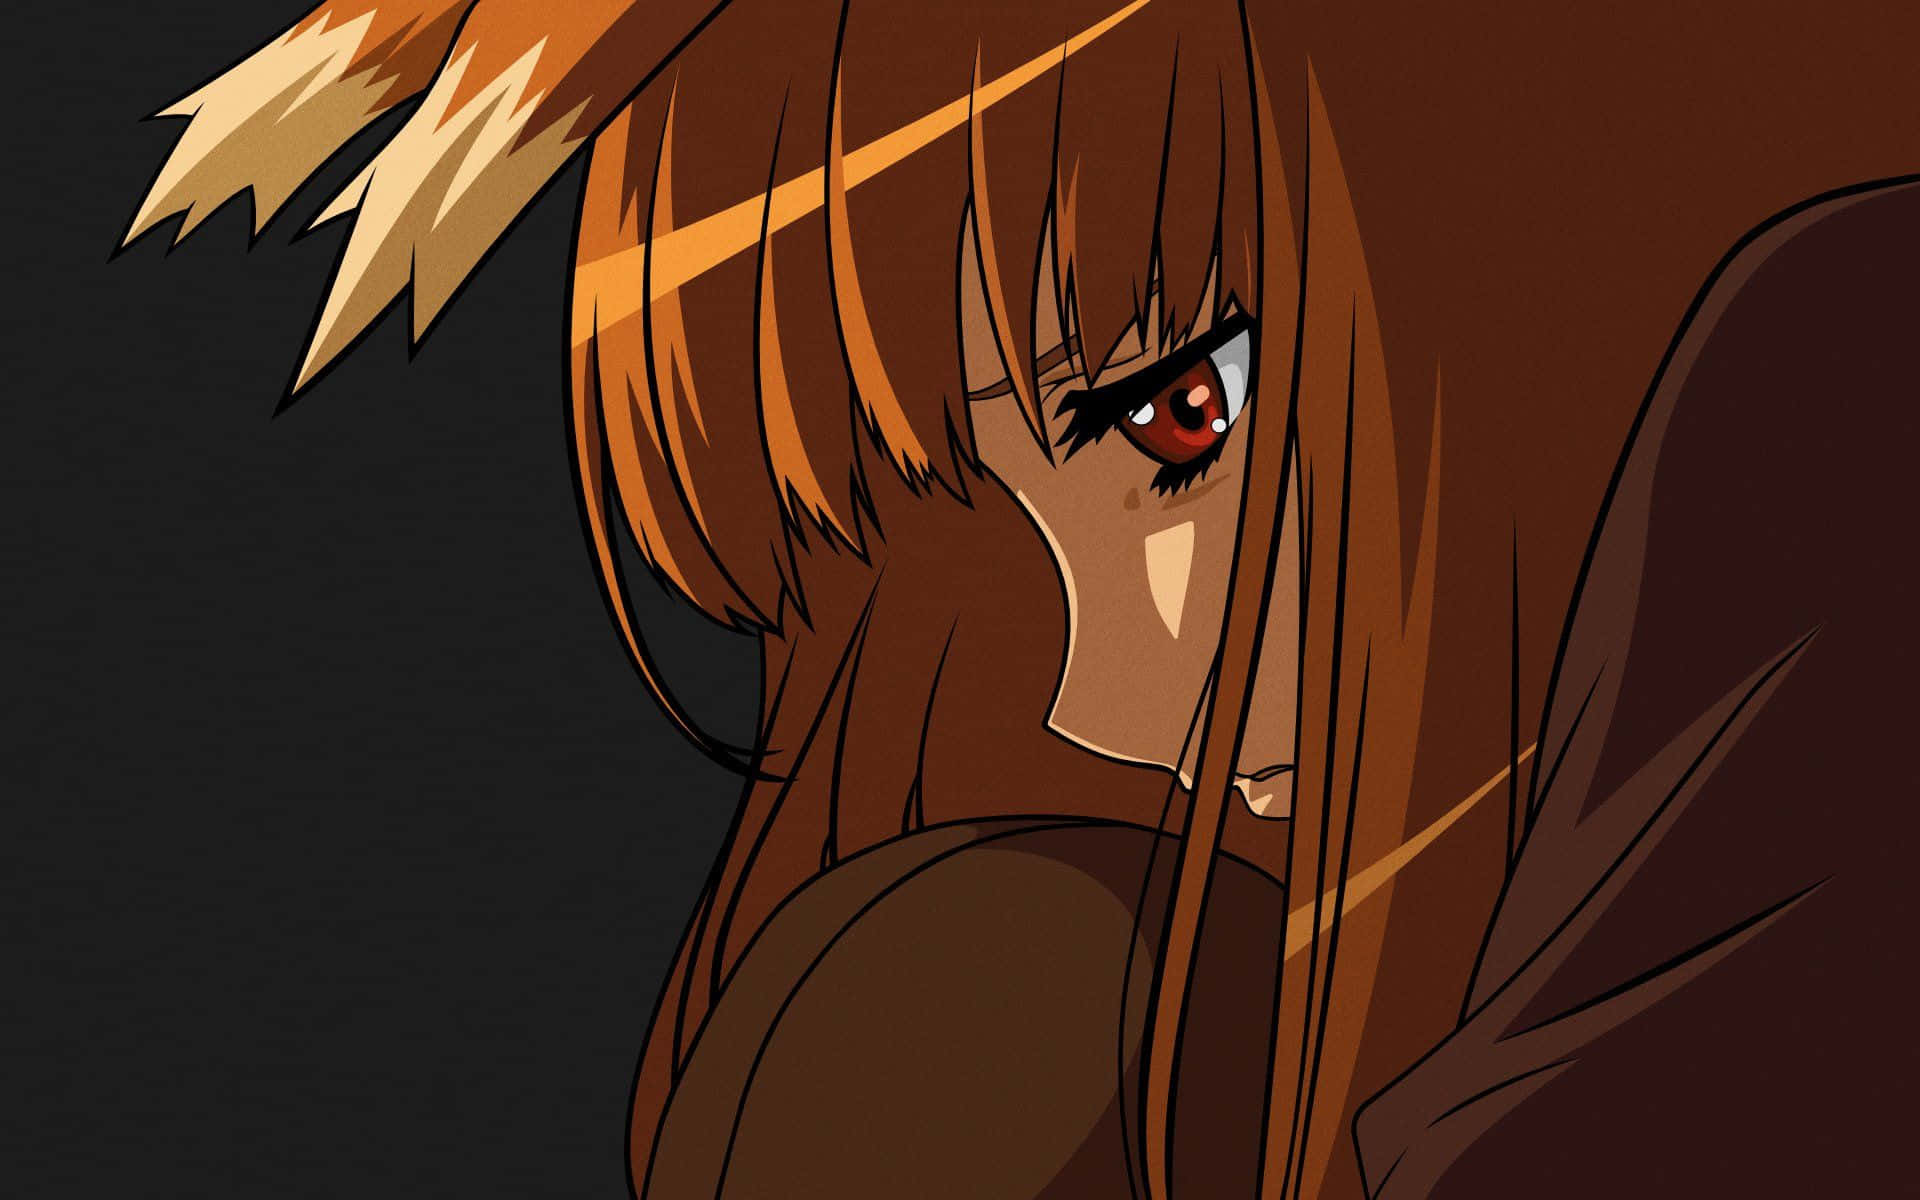 Sorglöshetfortsätter I Denna Fantastiska, Coola Och Sorgliga Anime-bakgrundsbild. Wallpaper